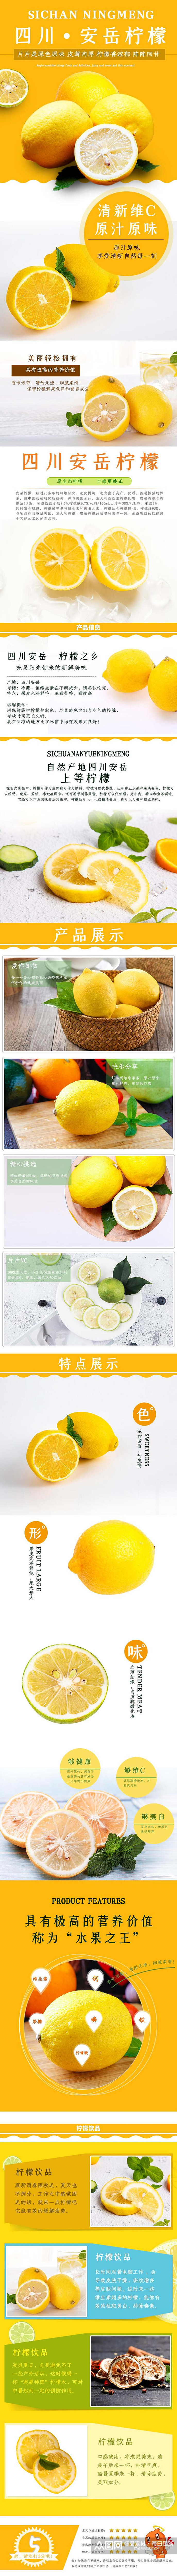 创意四川安岳柠檬水果手机版详情页素材